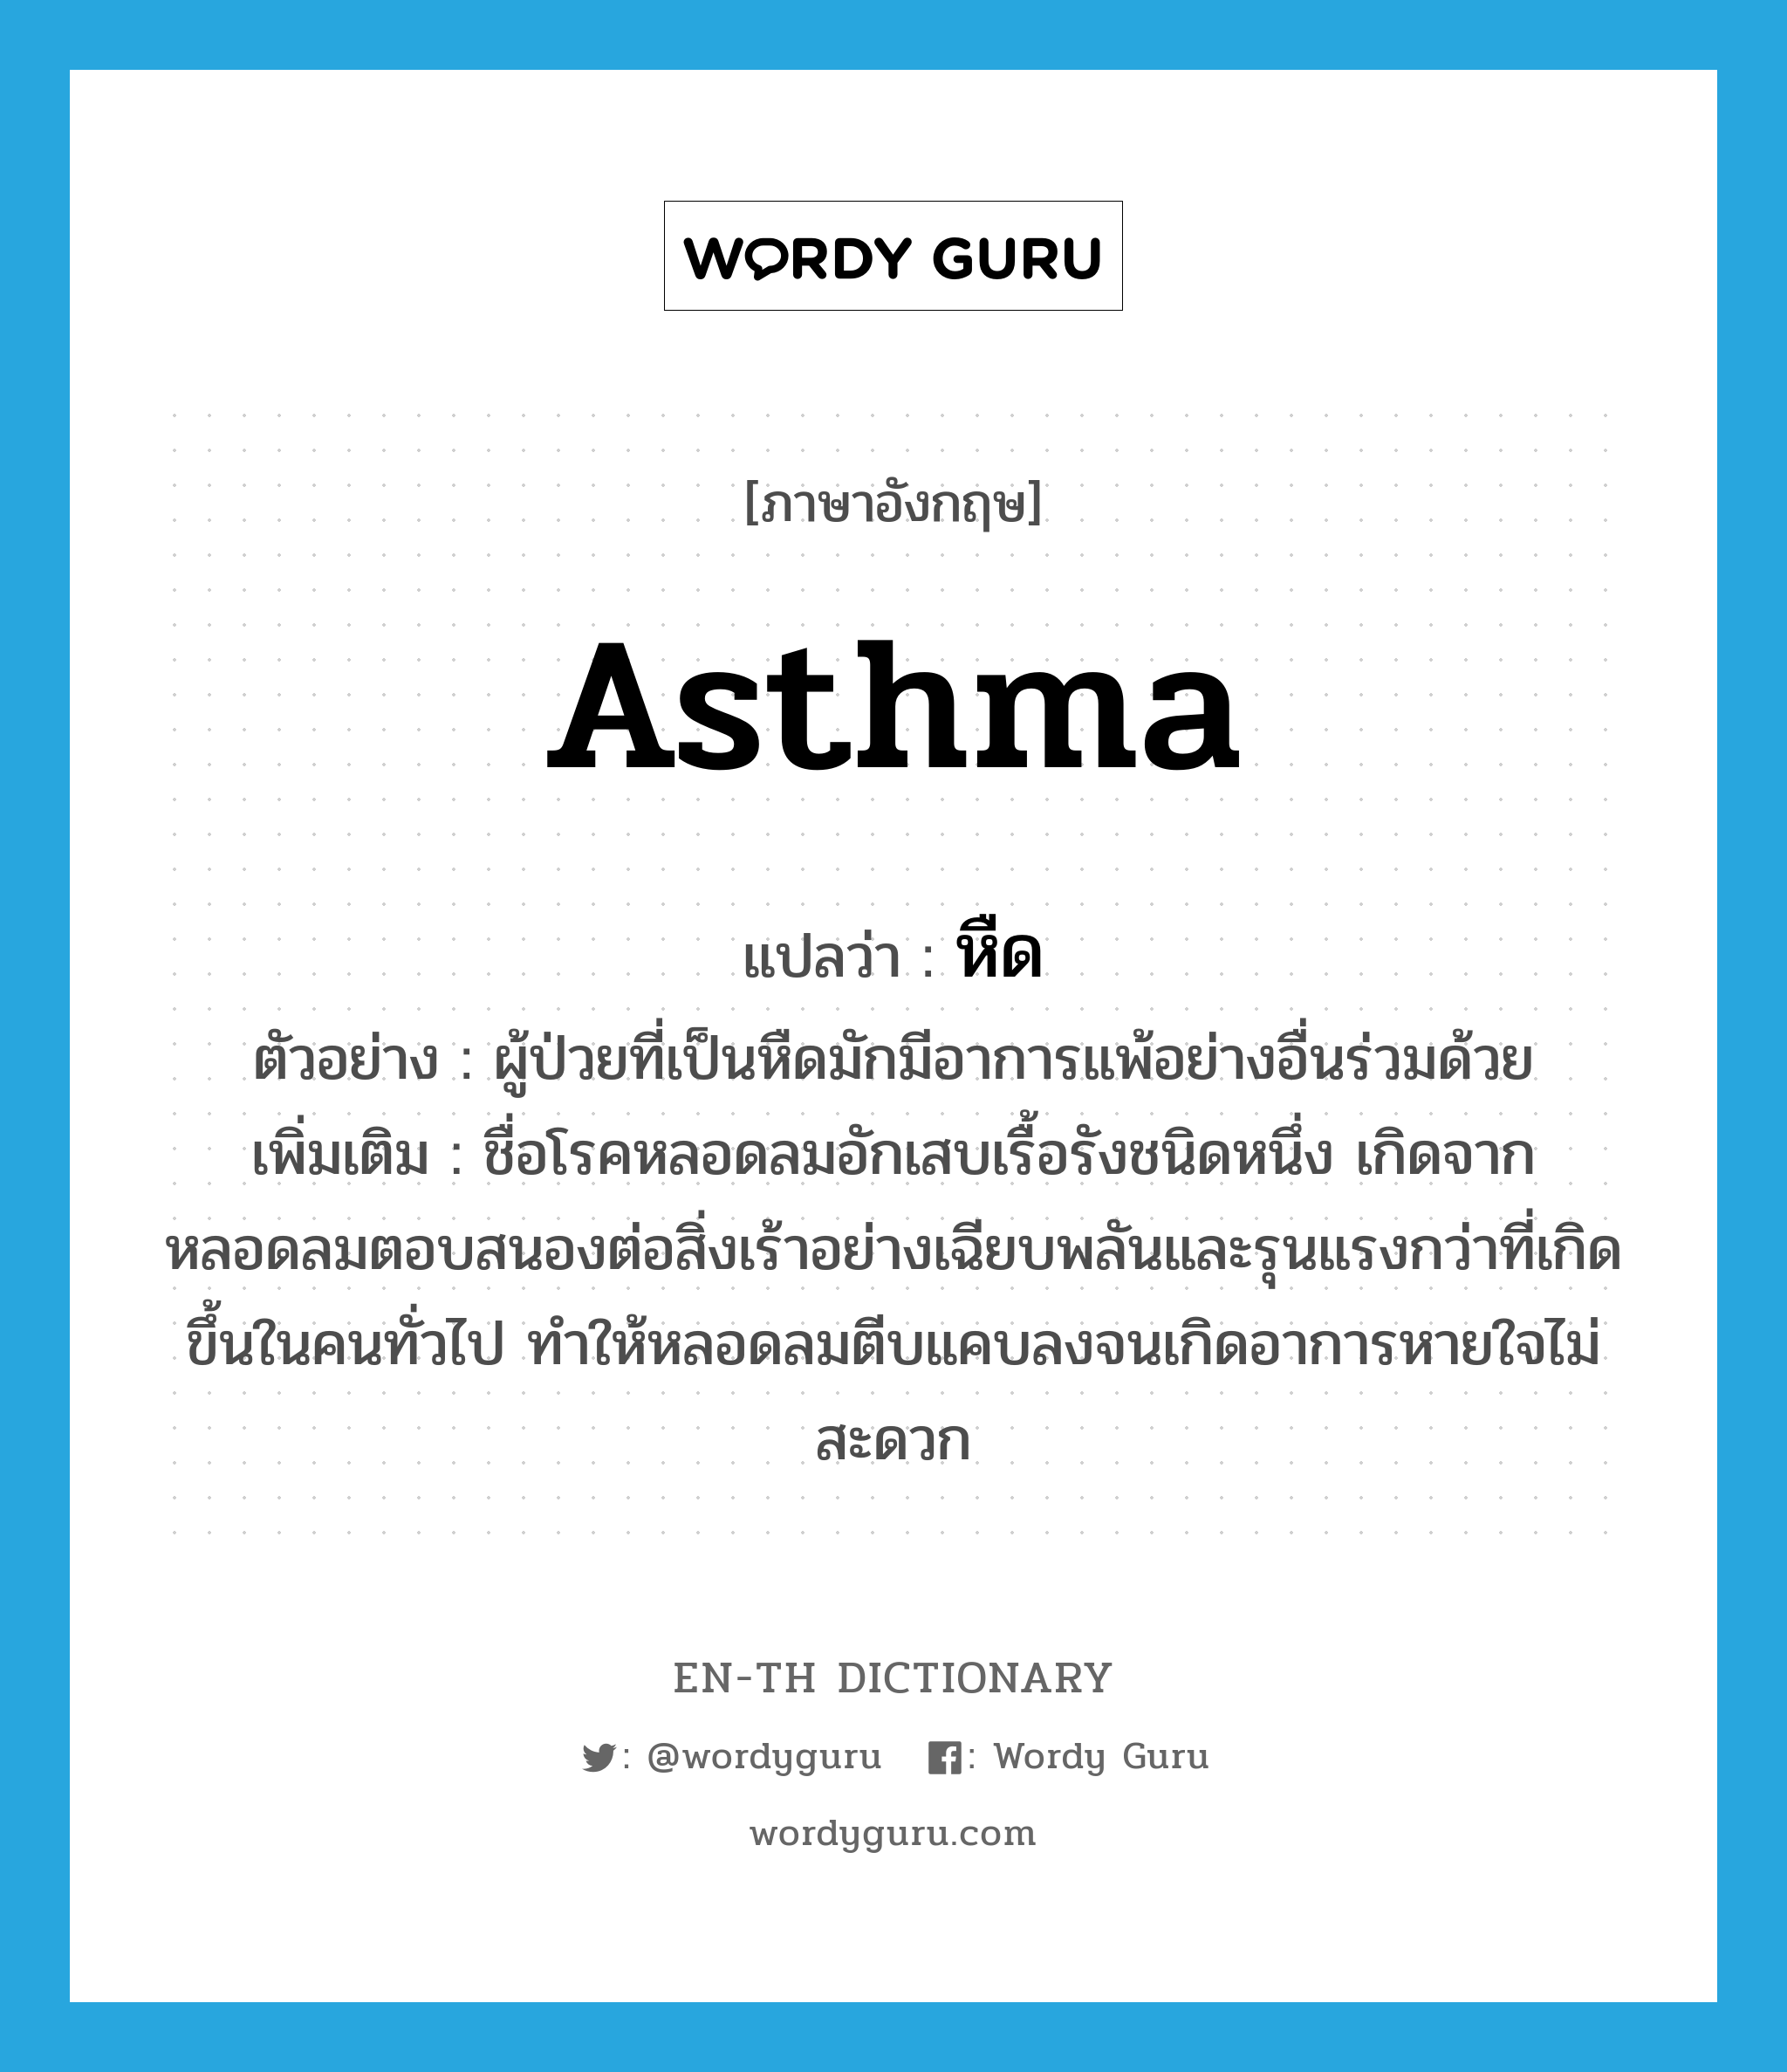 asthma แปลว่า?, คำศัพท์ภาษาอังกฤษ asthma แปลว่า หืด ประเภท N ตัวอย่าง ผู้ป่วยที่เป็นหืดมักมีอาการแพ้อย่างอื่นร่วมด้วย เพิ่มเติม ชื่อโรคหลอดลมอักเสบเรื้อรังชนิดหนึ่ง เกิดจากหลอดลมตอบสนองต่อสิ่งเร้าอย่างเฉียบพลันและรุนแรงกว่าที่เกิดขึ้นในคนทั่วไป ทำให้หลอดลมตีบแคบลงจนเกิดอาการหายใจไม่สะดวก หมวด N